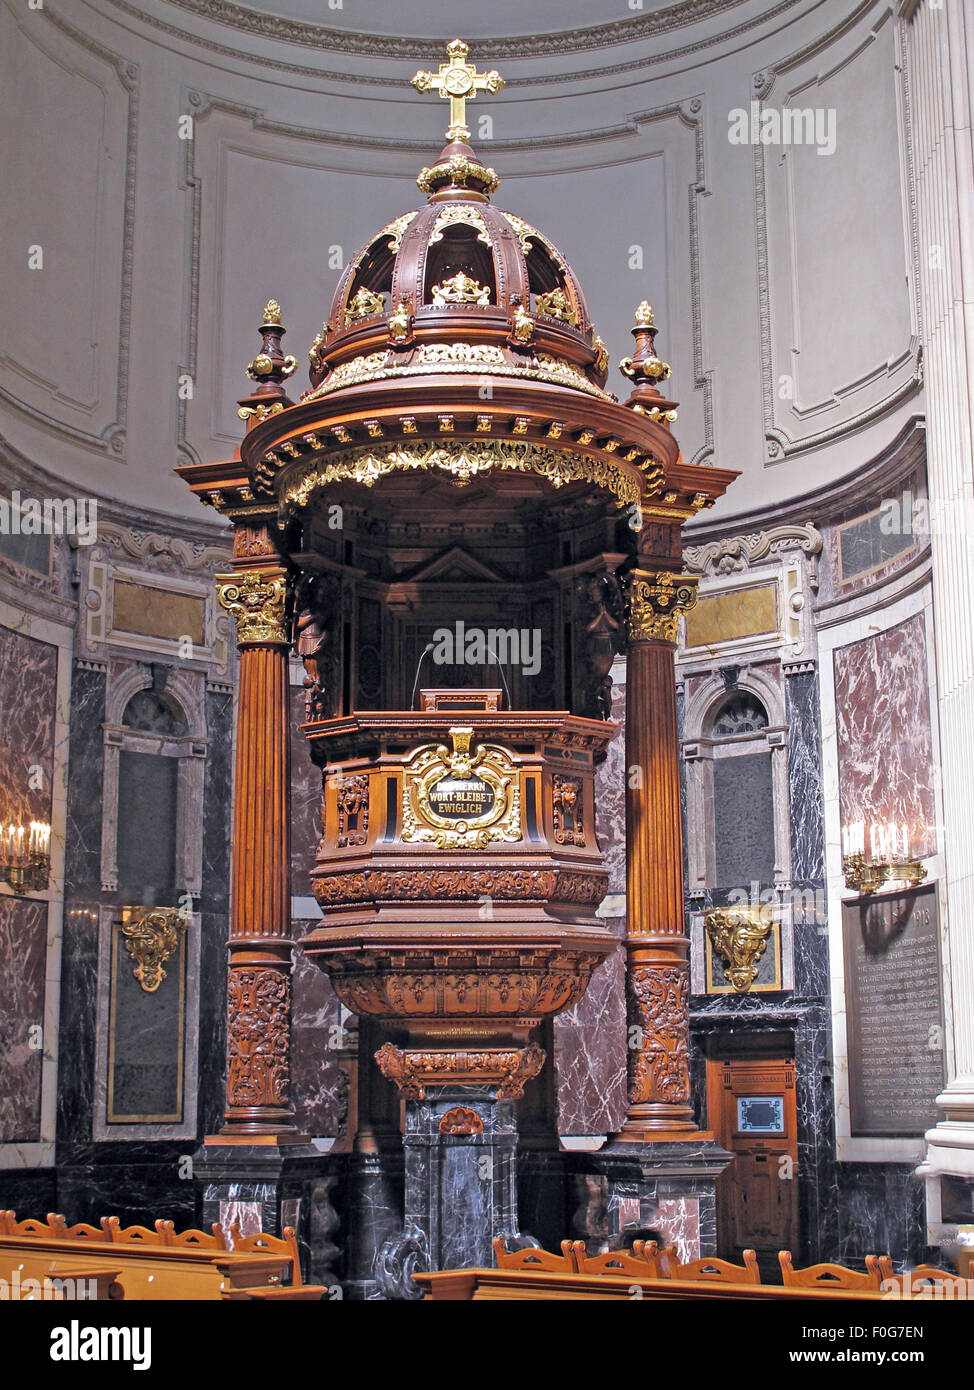 Chaire de la cathédrale de Berlin, Allemagne Chaire c1905 ; bois et l'or design avec crucifix. Banque D'Images